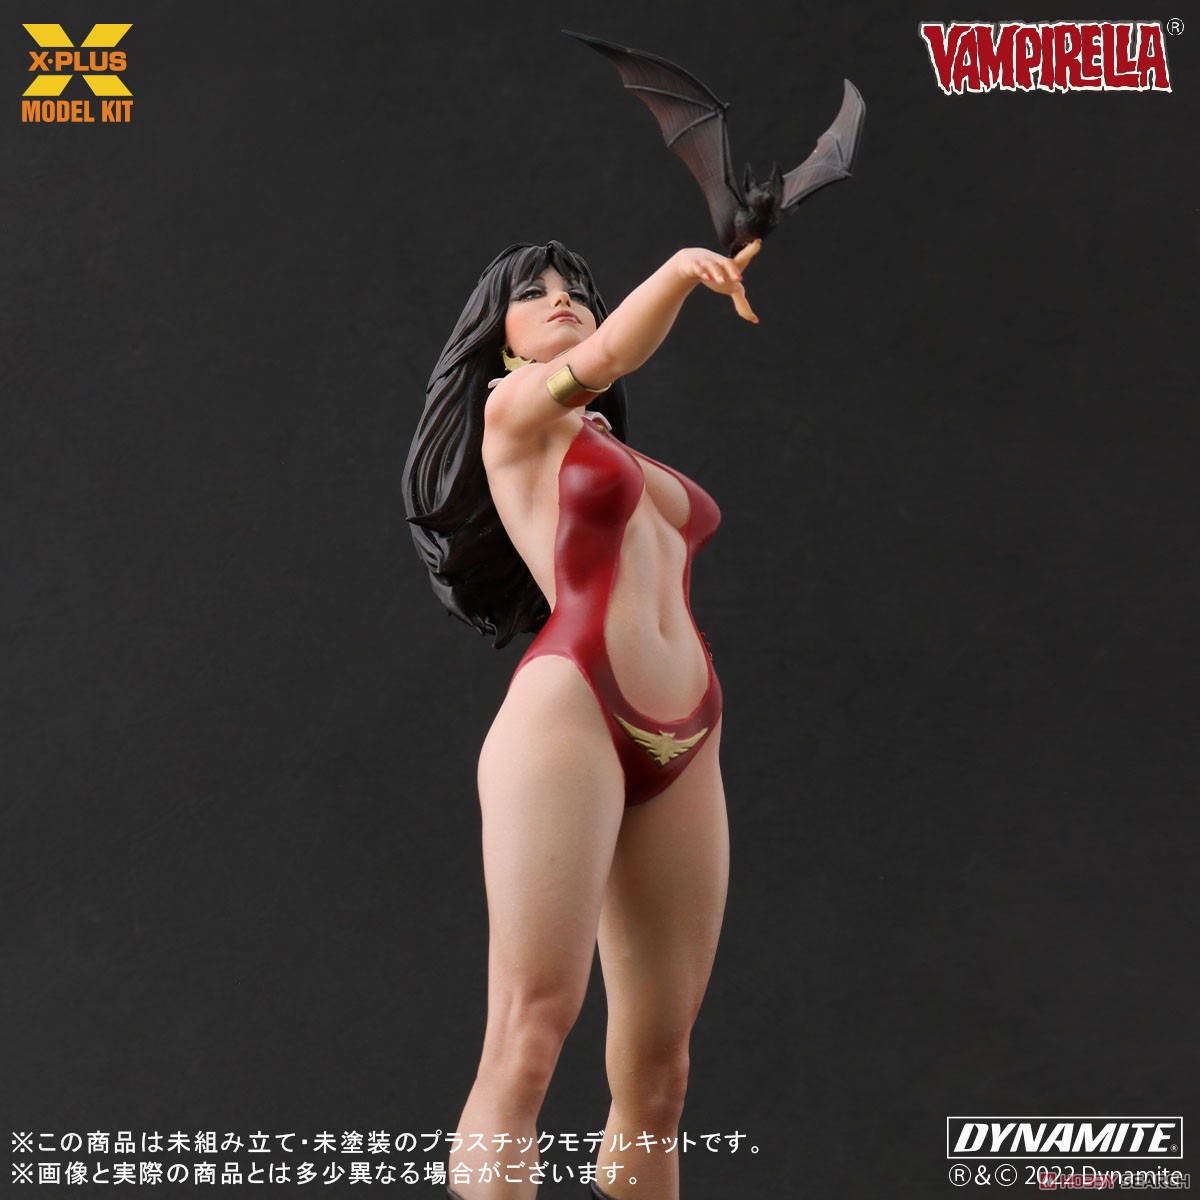 Vampirella『ヴァンピレラ ホセ・ゴンザレス エディション 』1/8スケール プラスチック モデルキット-008